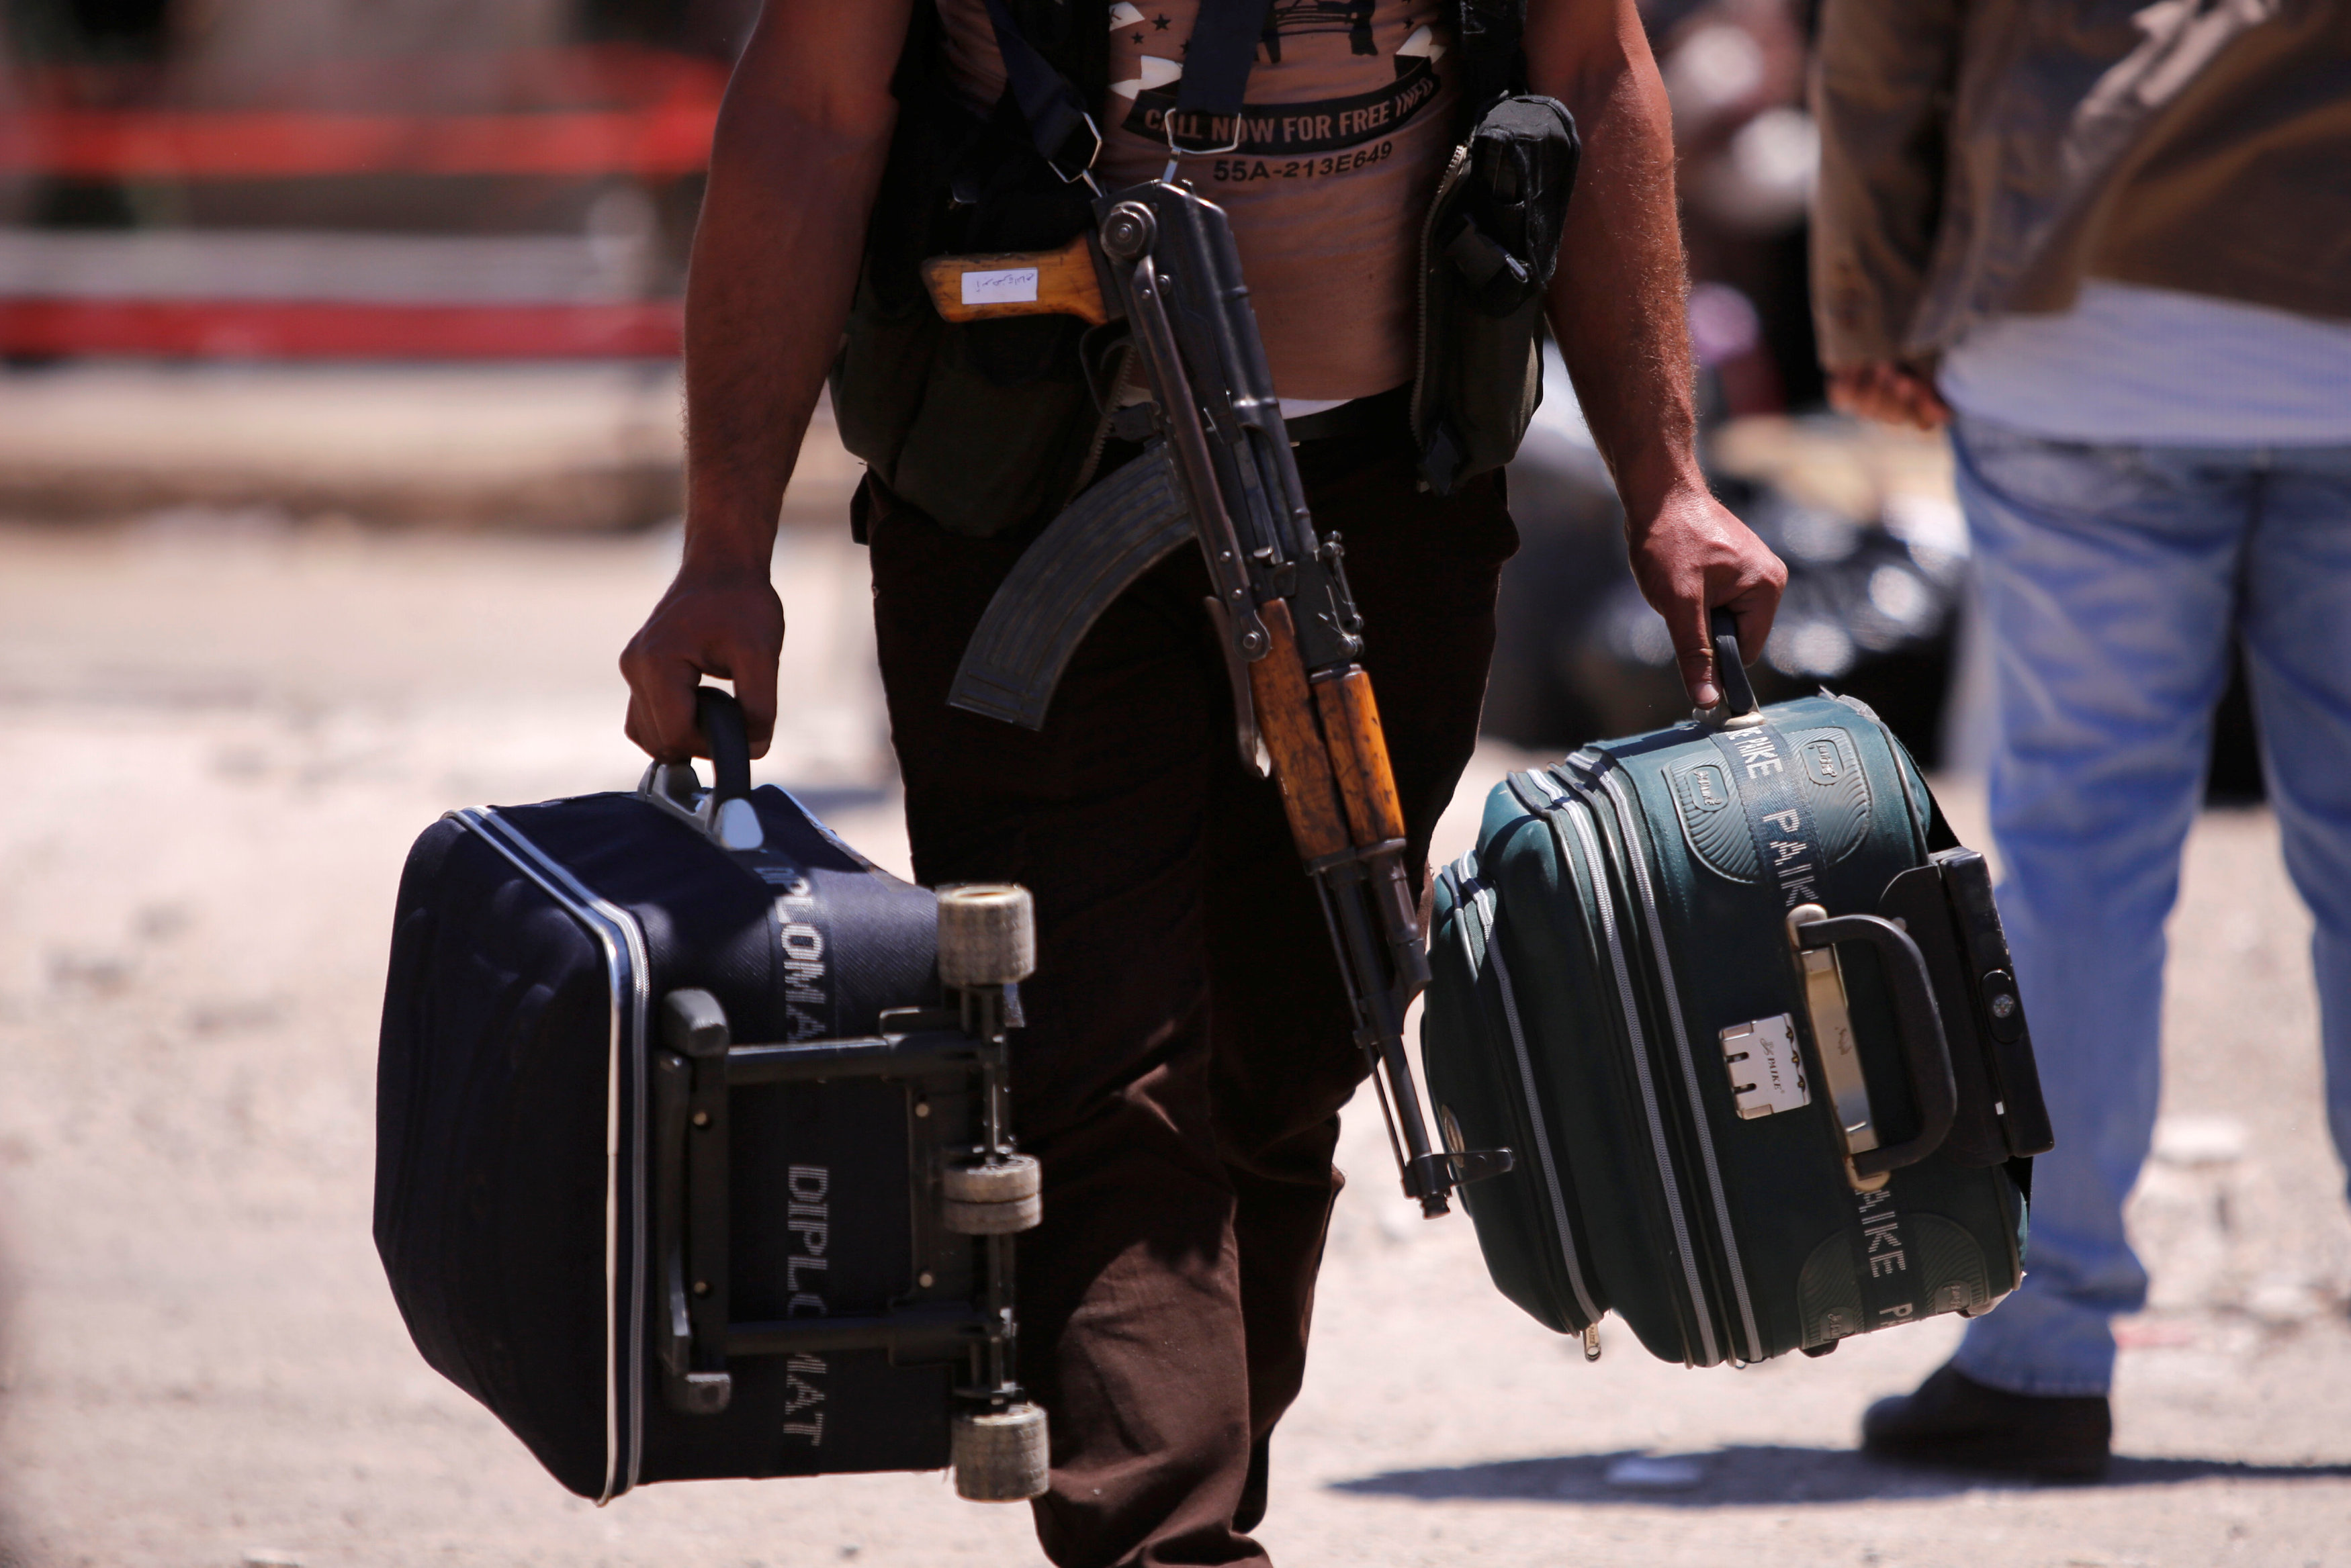 أحد المقاتلين يحمل حقائبه وسلاحه خلال مغادرته حمص